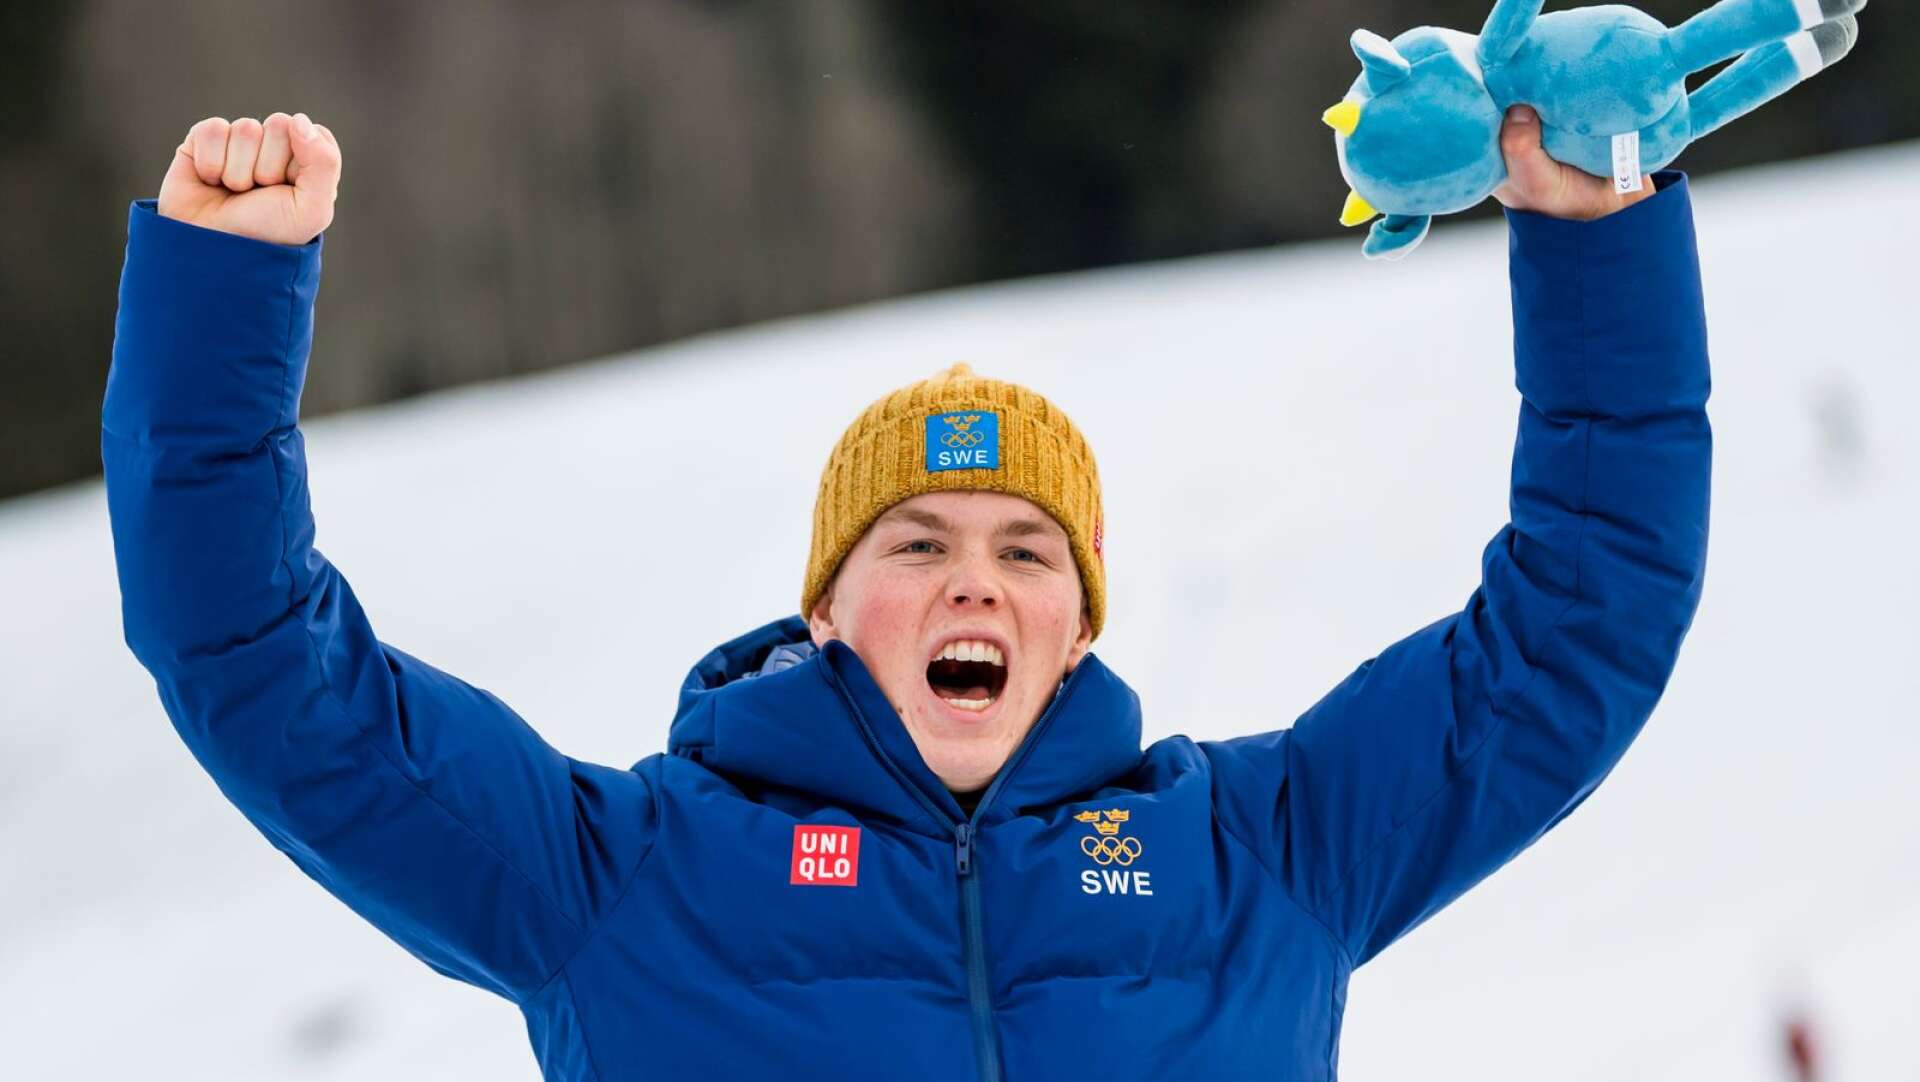 17-årige Adam Hofstedt från Karlstad jublar efter att ha tagit andra guldet på världsungdoms-OS i alpint i Lausanne. Nu i slalom.